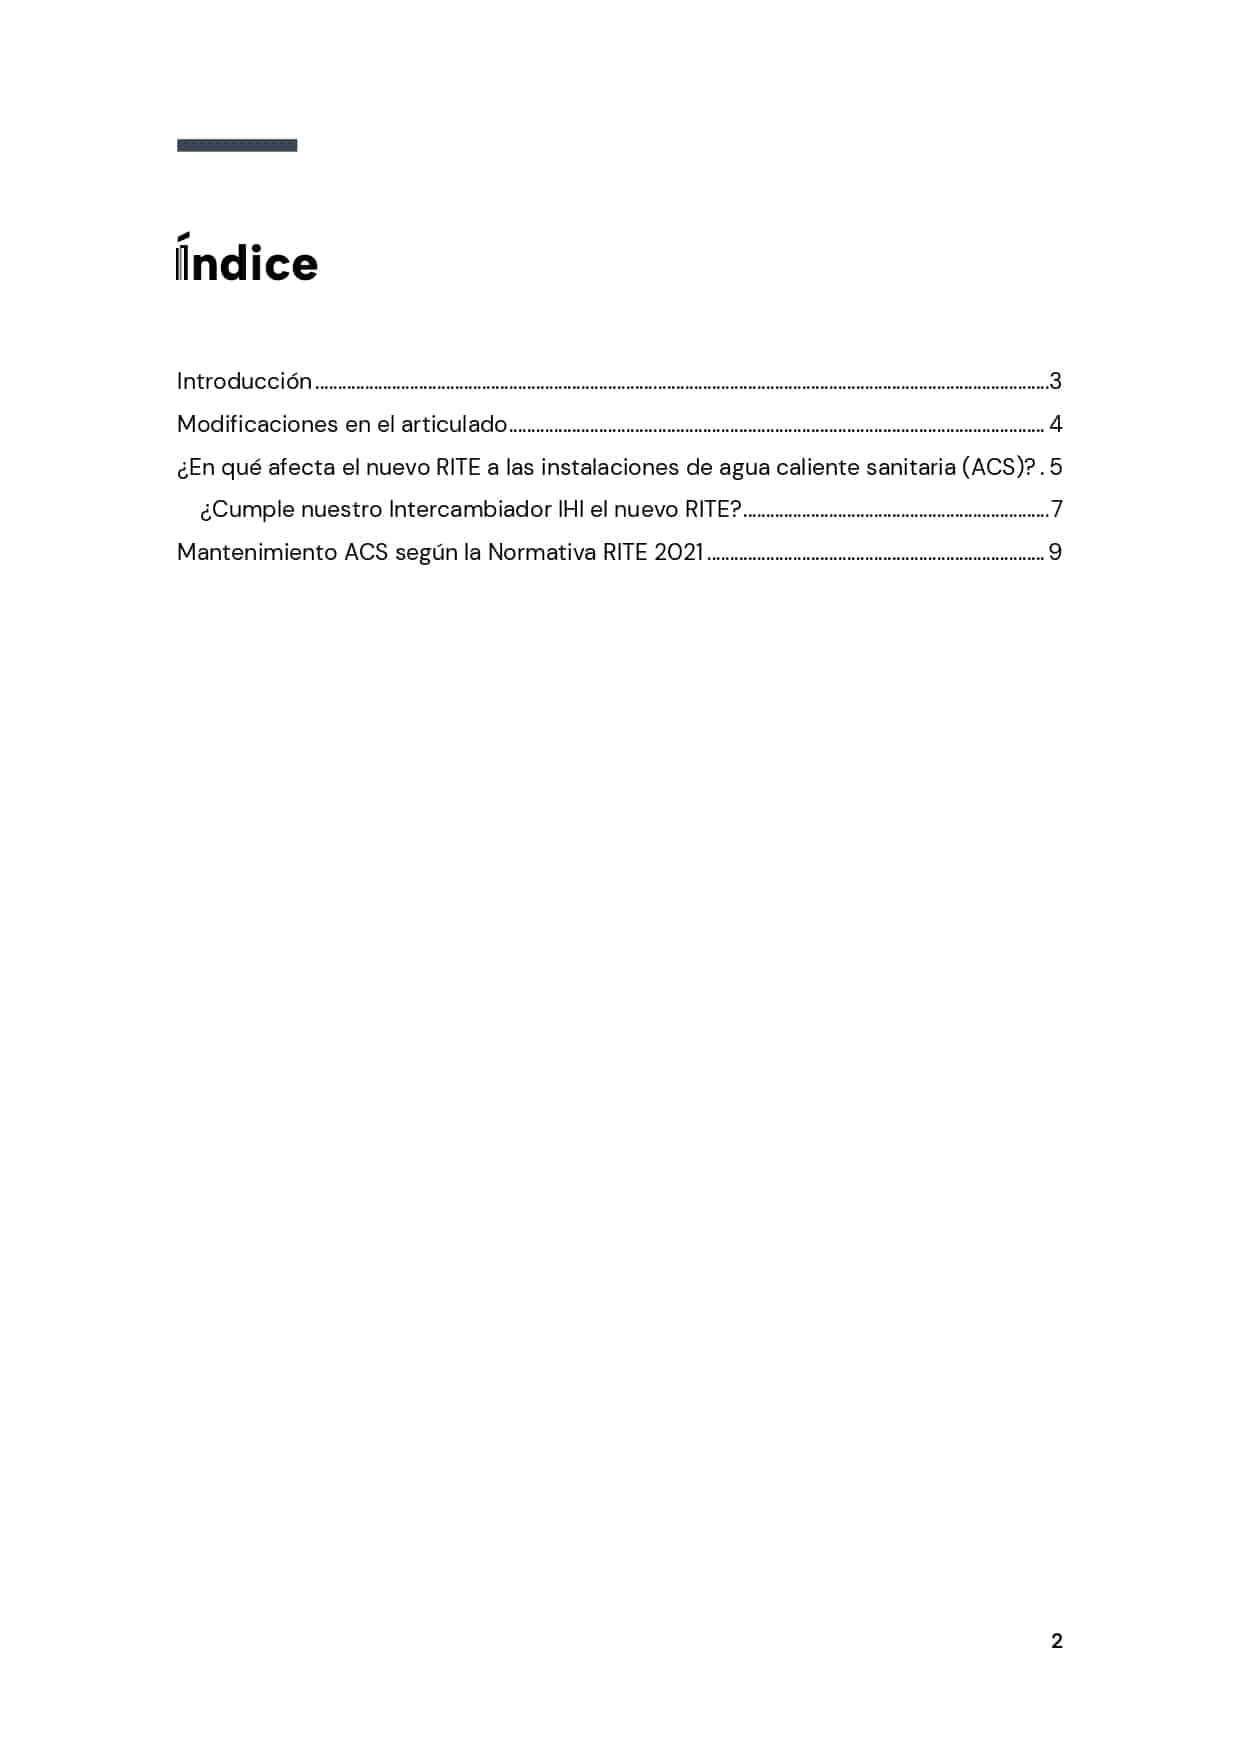 [Ebook] Índice Normativa RITE ACS